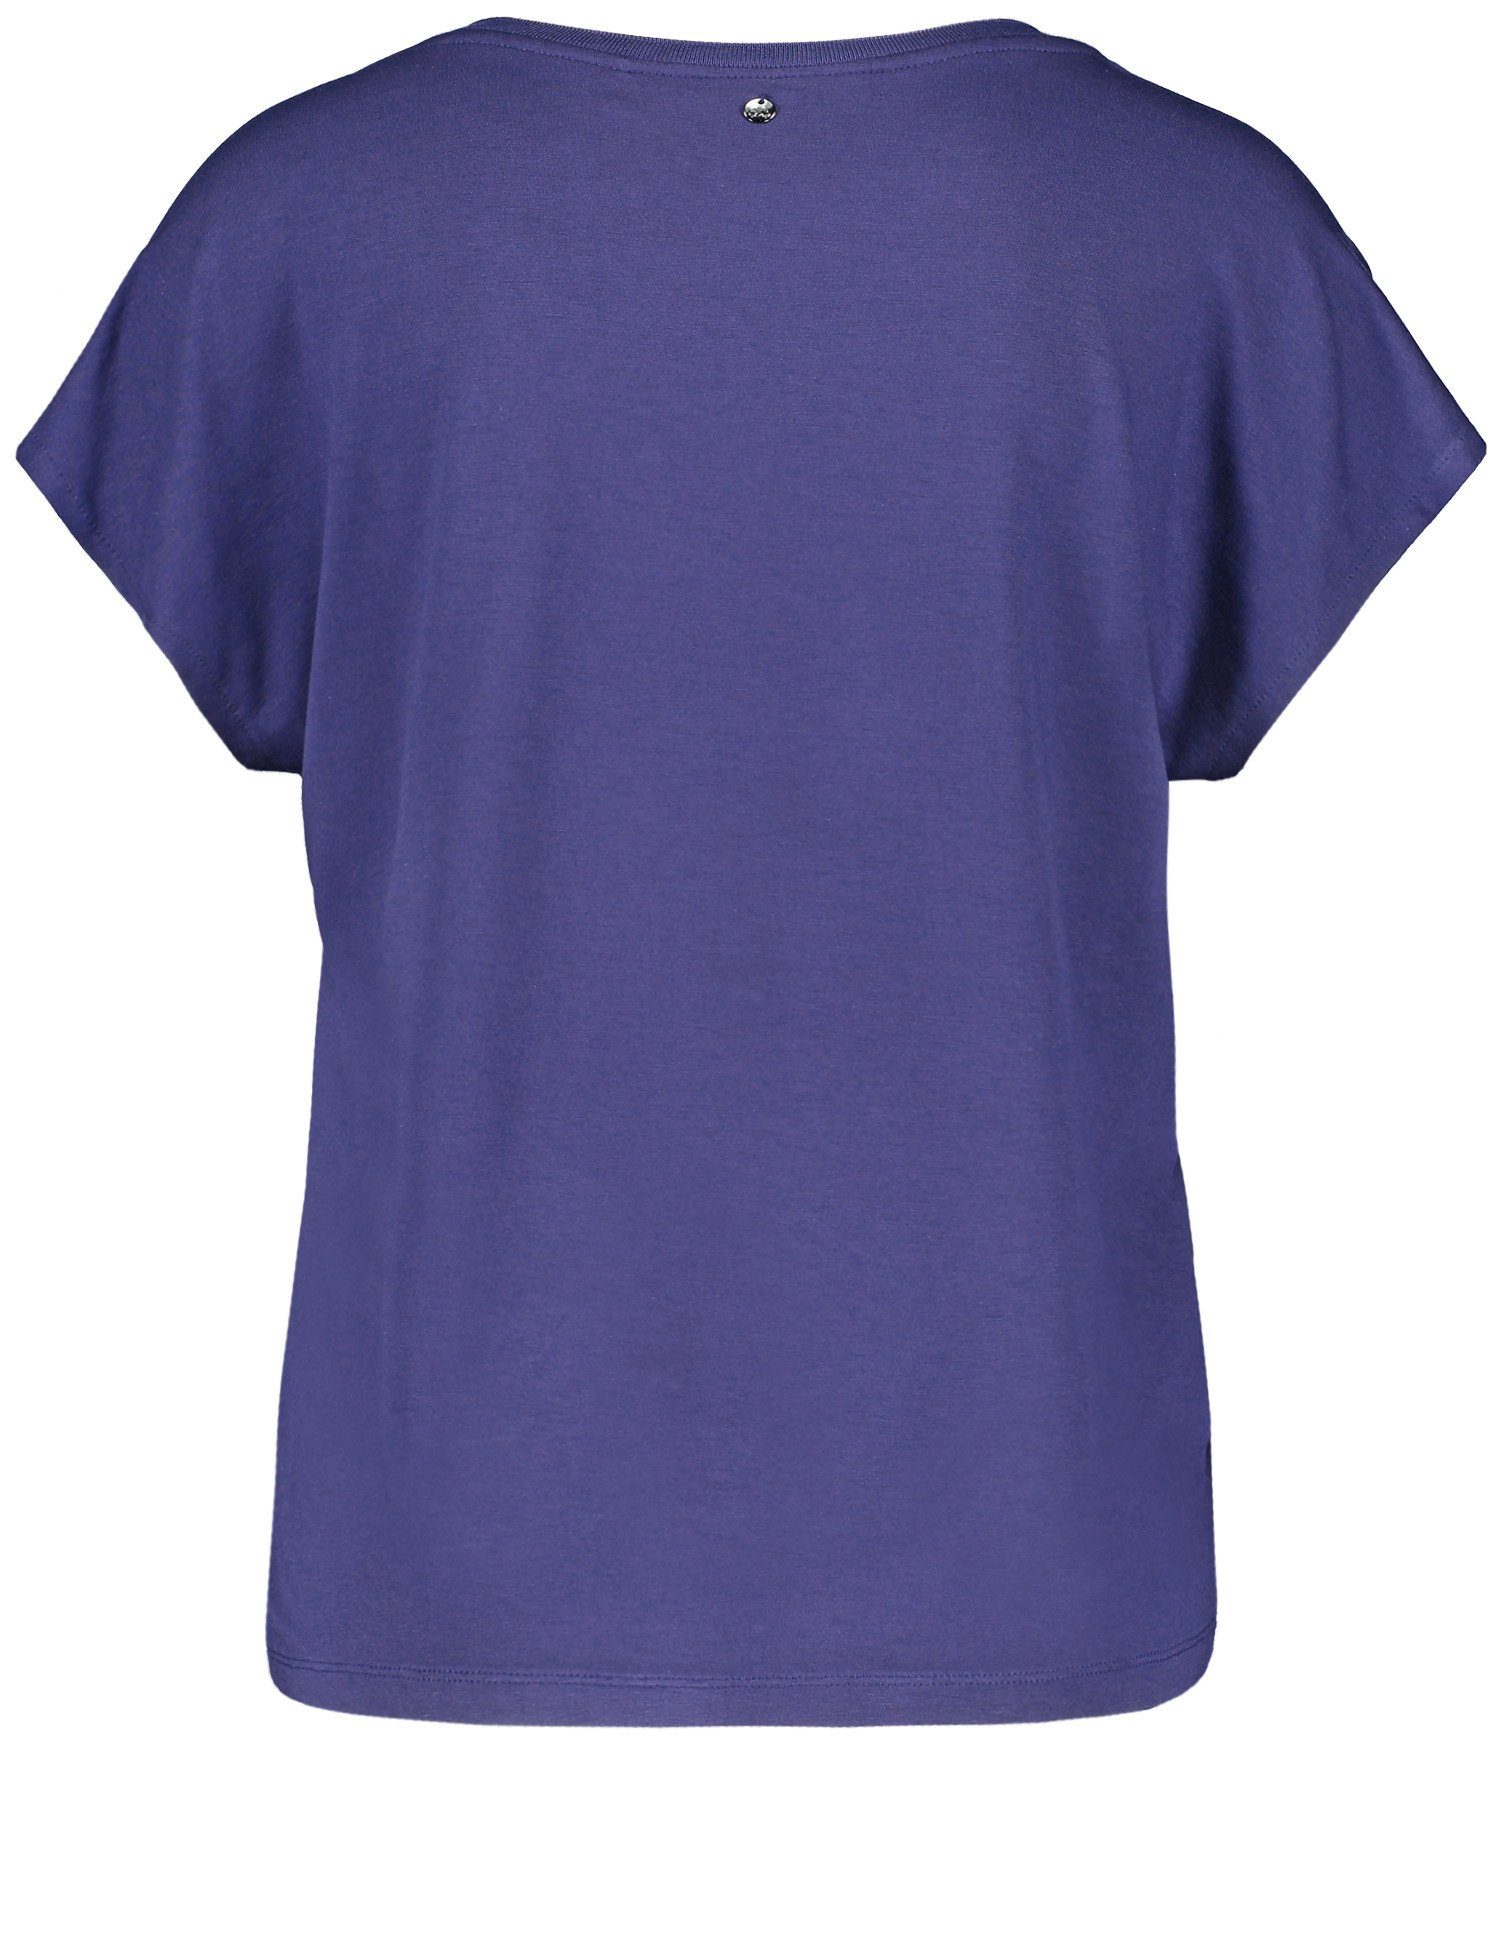 GERRY WEBER Kurzarmshirt Blusenshirt mit Frontprint Blueberry